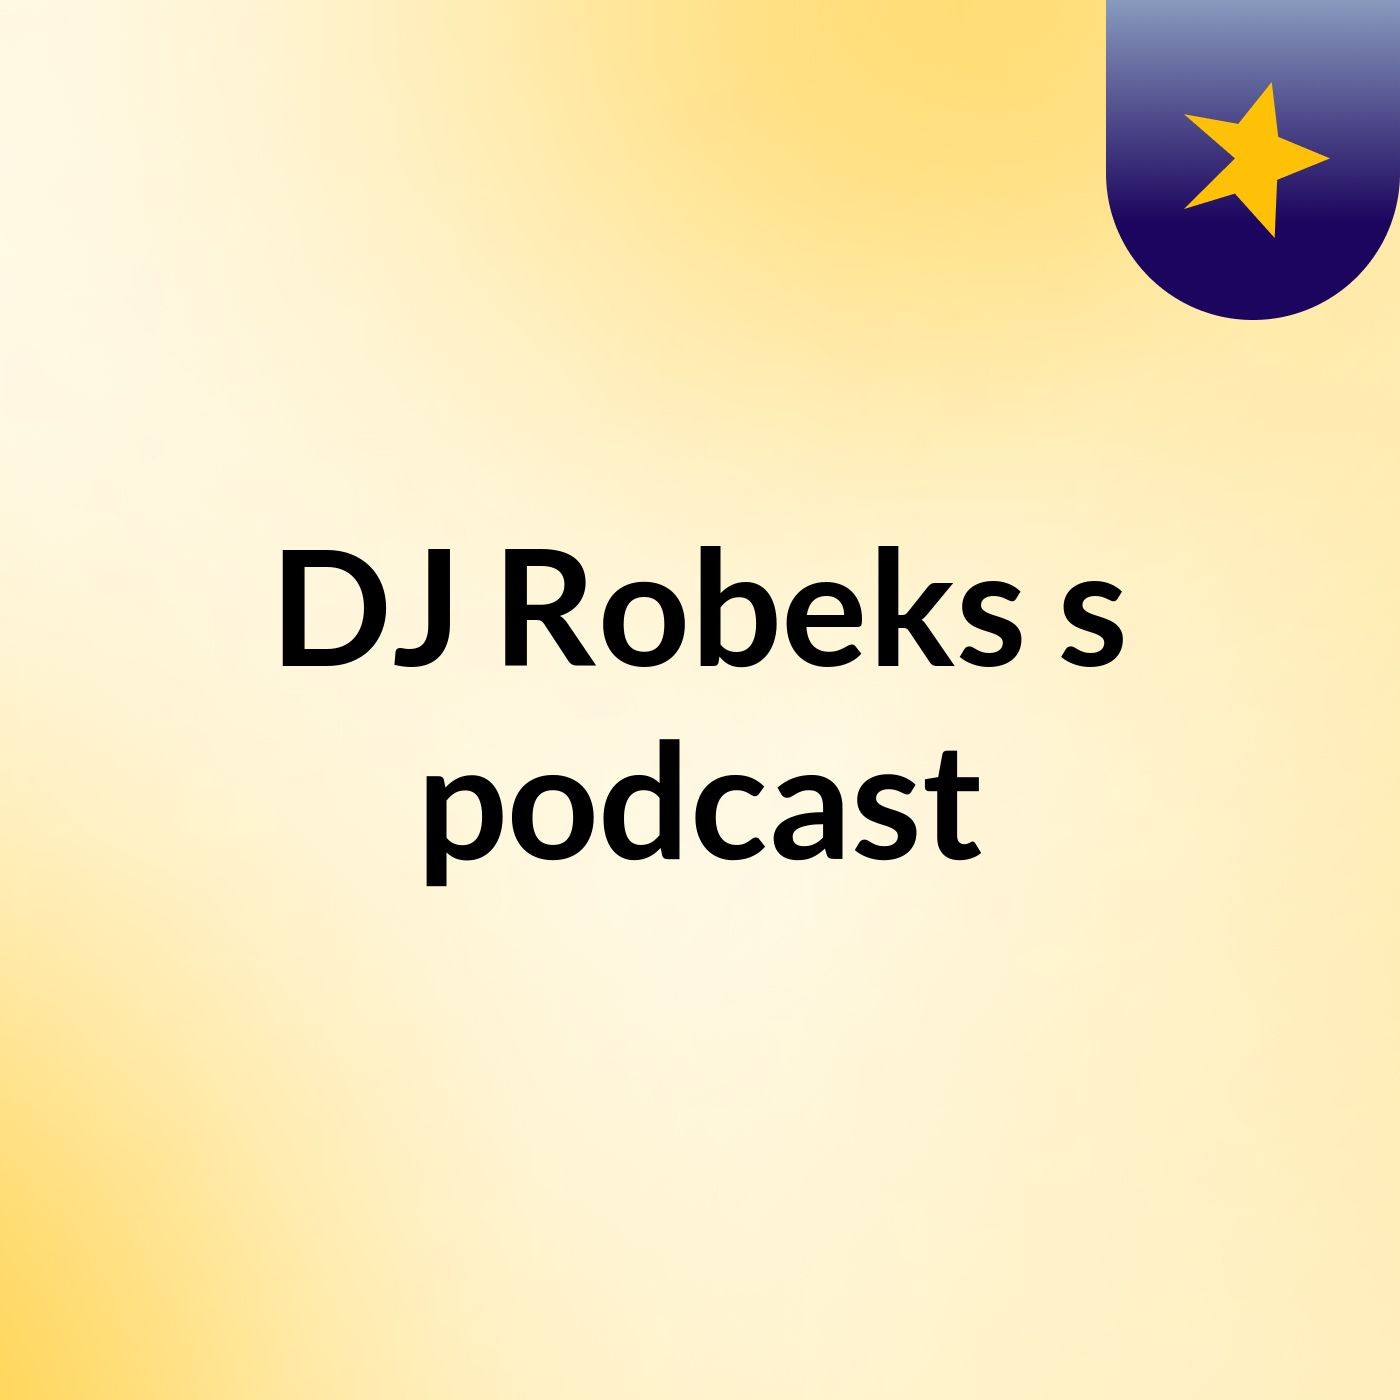 Episode 3 - DJ Robeks's podcast